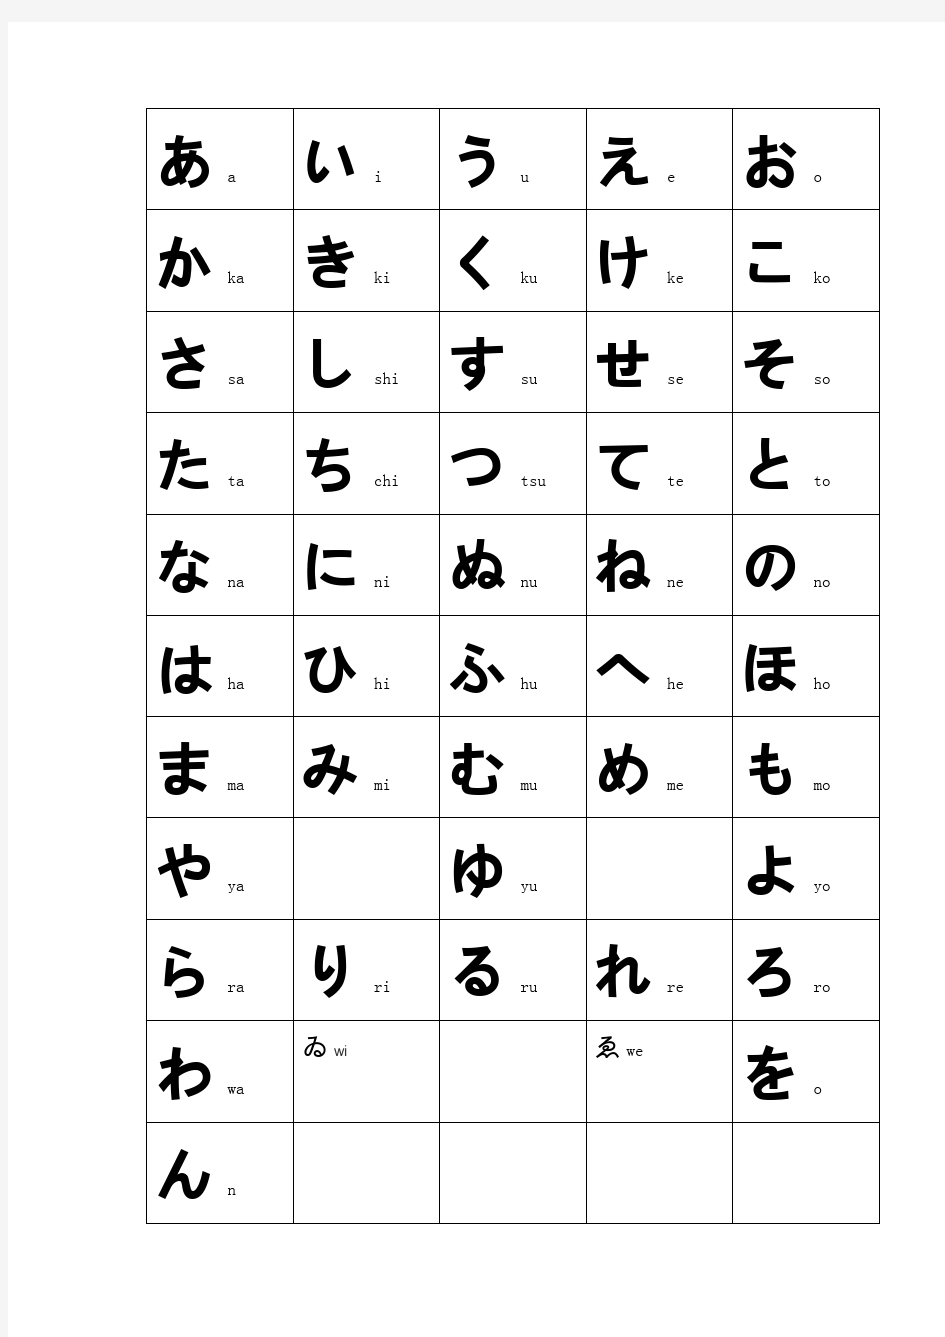 日语五十音50音图识字表